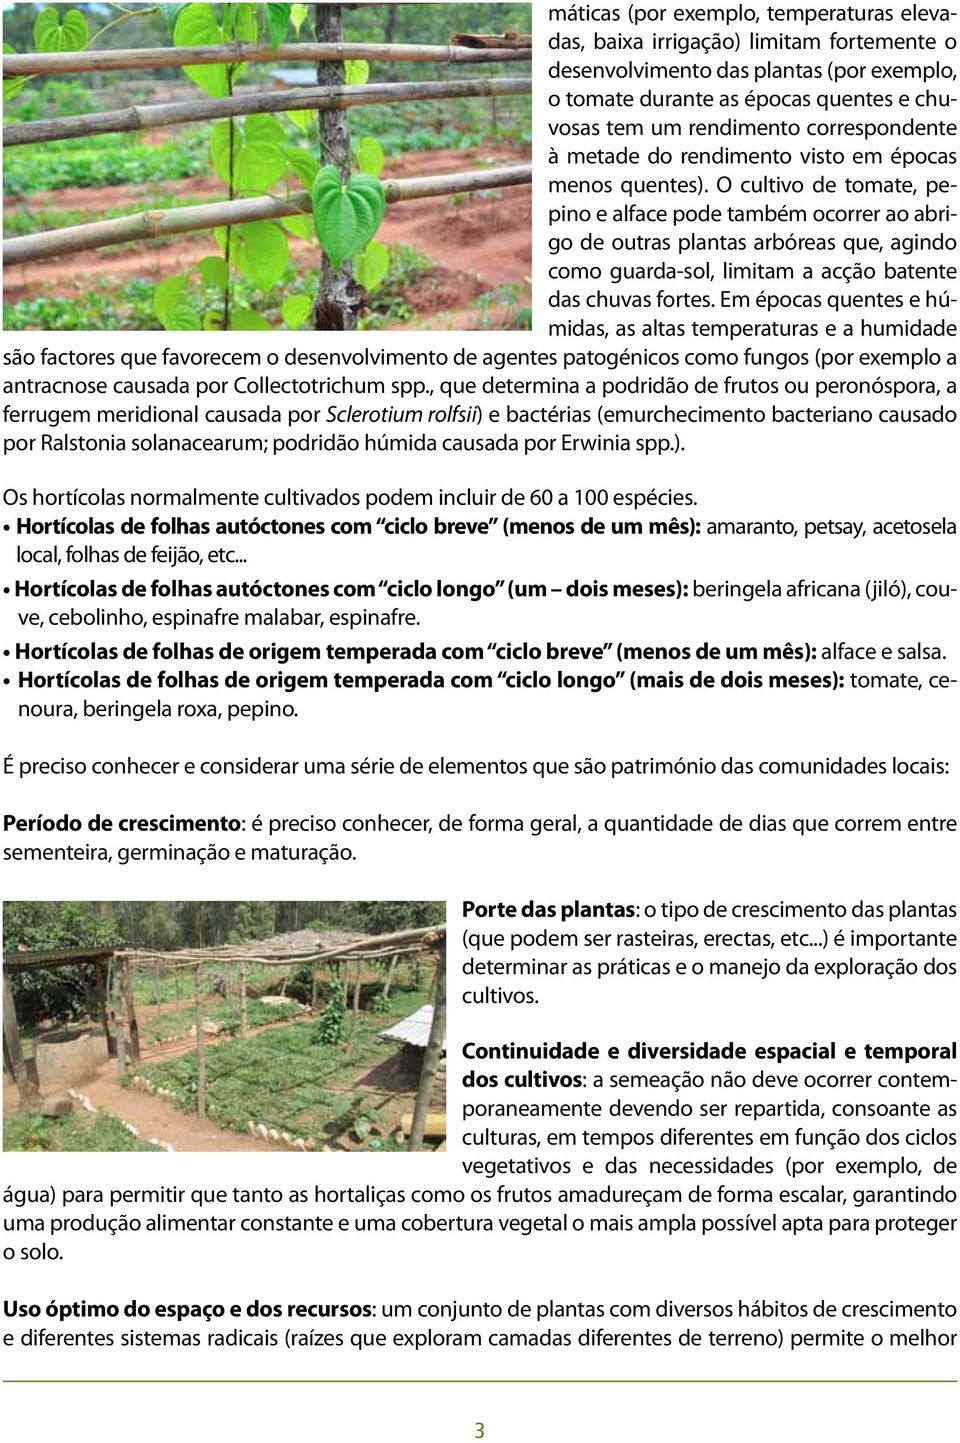 O cultivo de tomate, pepino e alface pode também ocorrer ao abrigo de outras plantas arbóreas que, agindo como guarda-sol, limitam a acção batente das chuvas fortes.